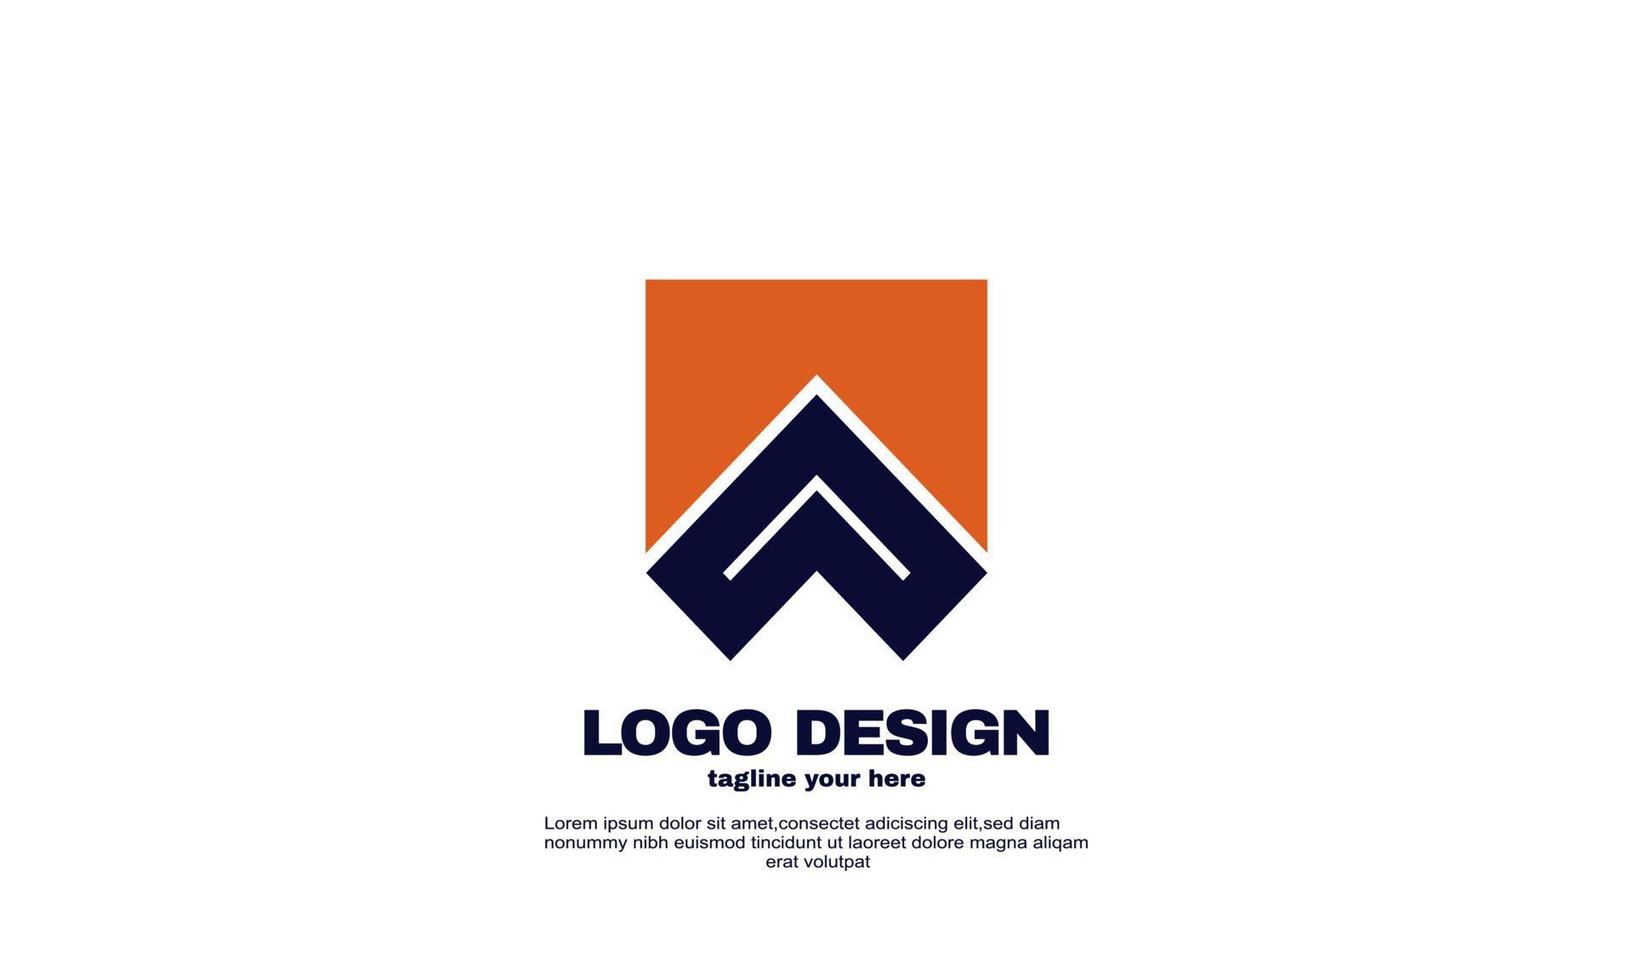 Stock vector negocio abstracto inspiración de la empresa diseño de logotipo plantilla de identidad de marca corporativa